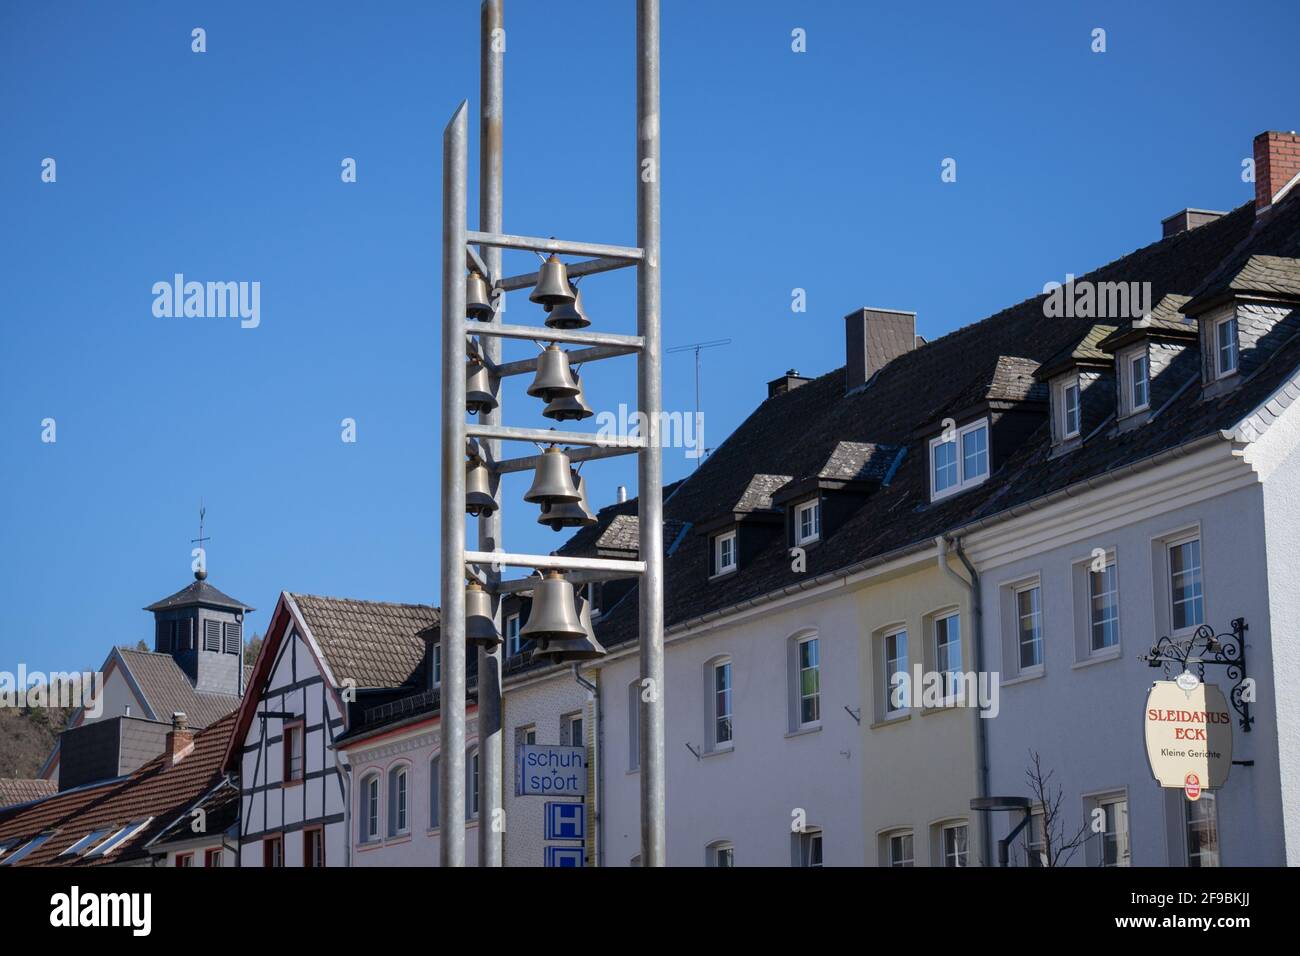 SCHLEIDEN, GERMANIA - Mar 02, 2021: Il carillon nel centro di Schleiden in Eifel sono un punto di riferimento della città. Foto Stock